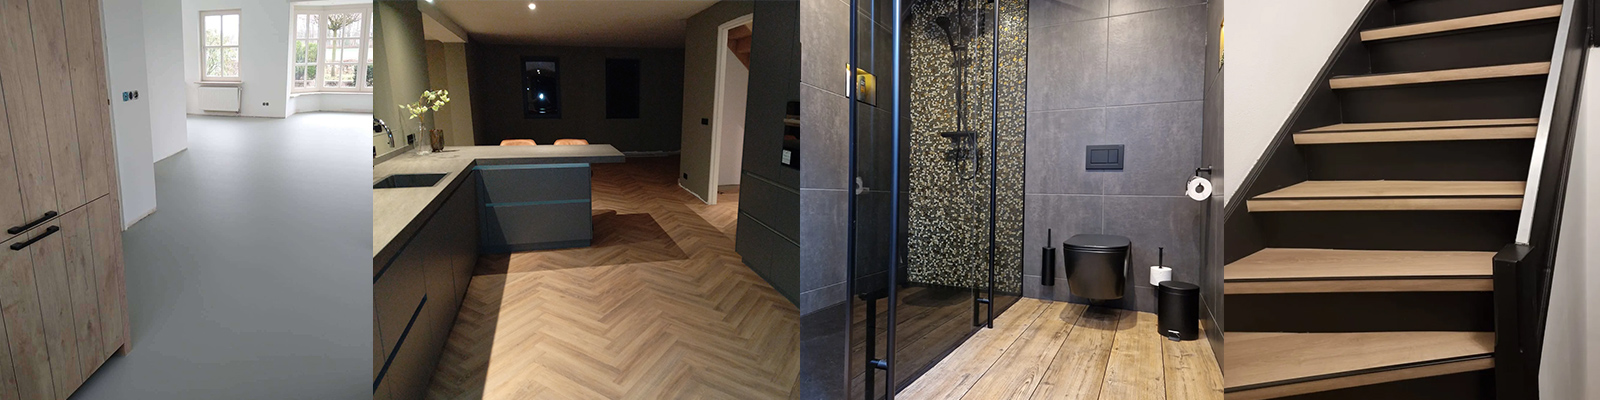 PVC-vloeren of coatingvloer laten leggen, badkamer verbouwen en trap renovatie door bouwbedrijf Hendri Afbouw uit Twente